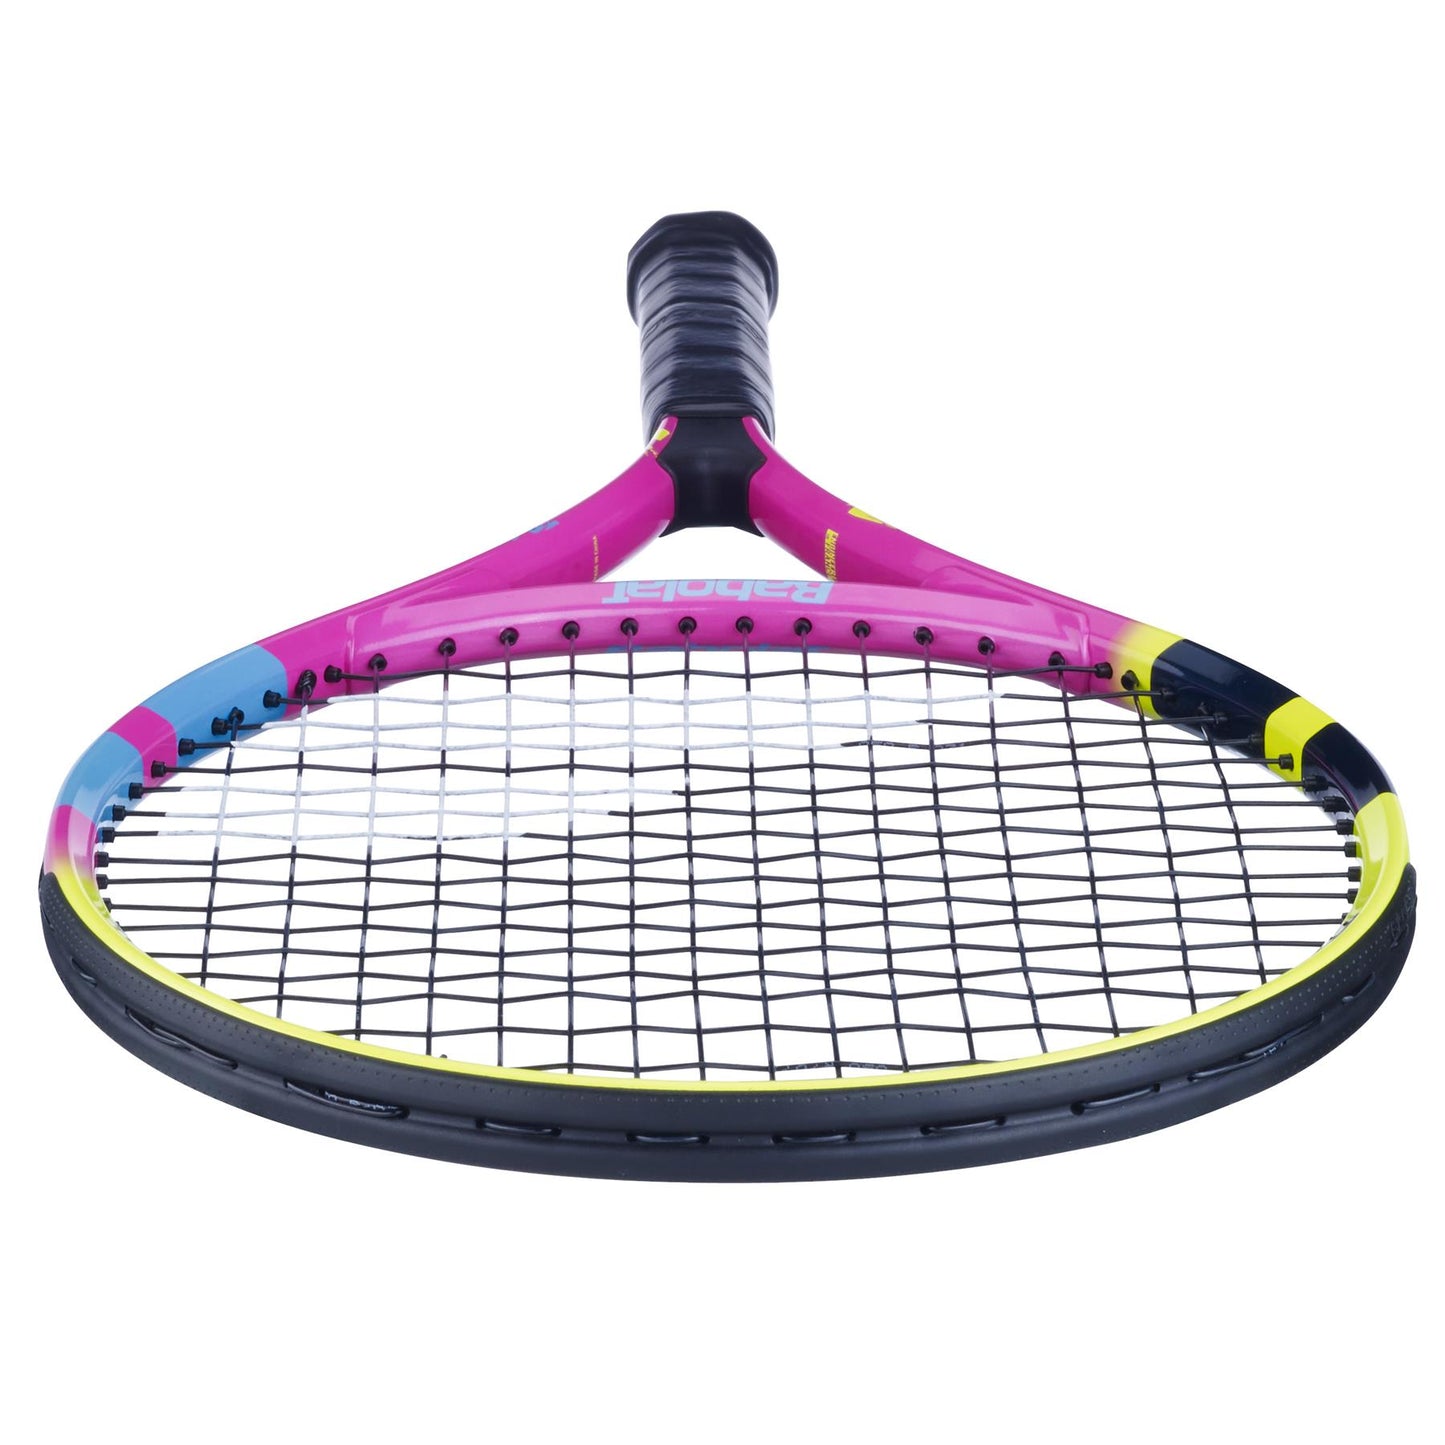 Babolat Nadal Junior 25 Tennis Racket  - Pink / Yellow